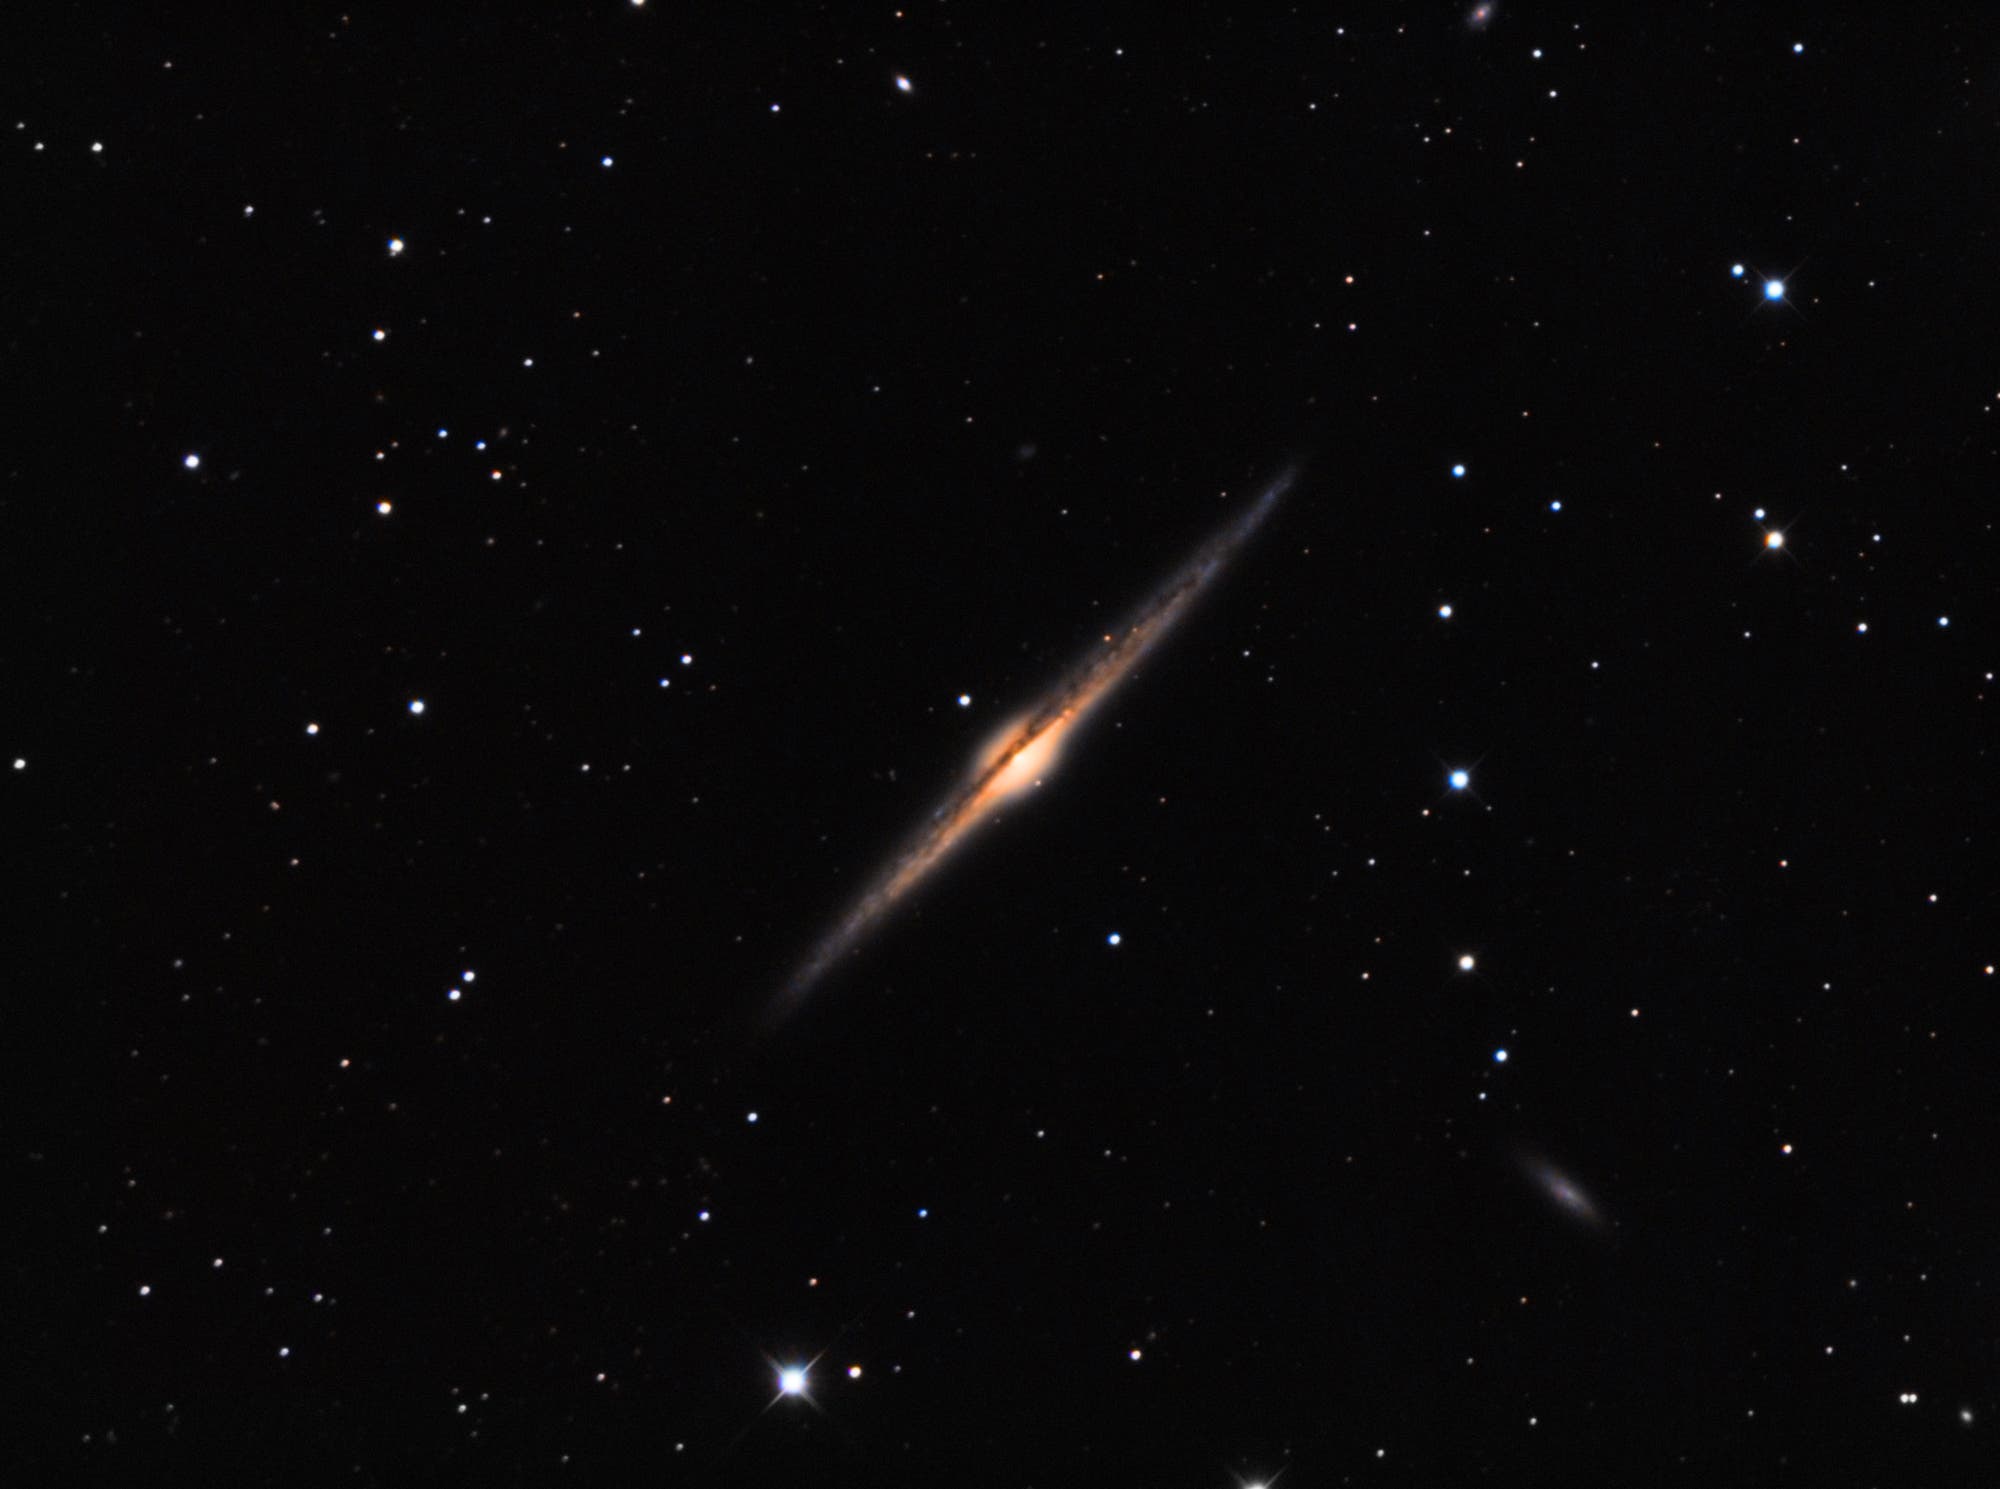 NGC 4565